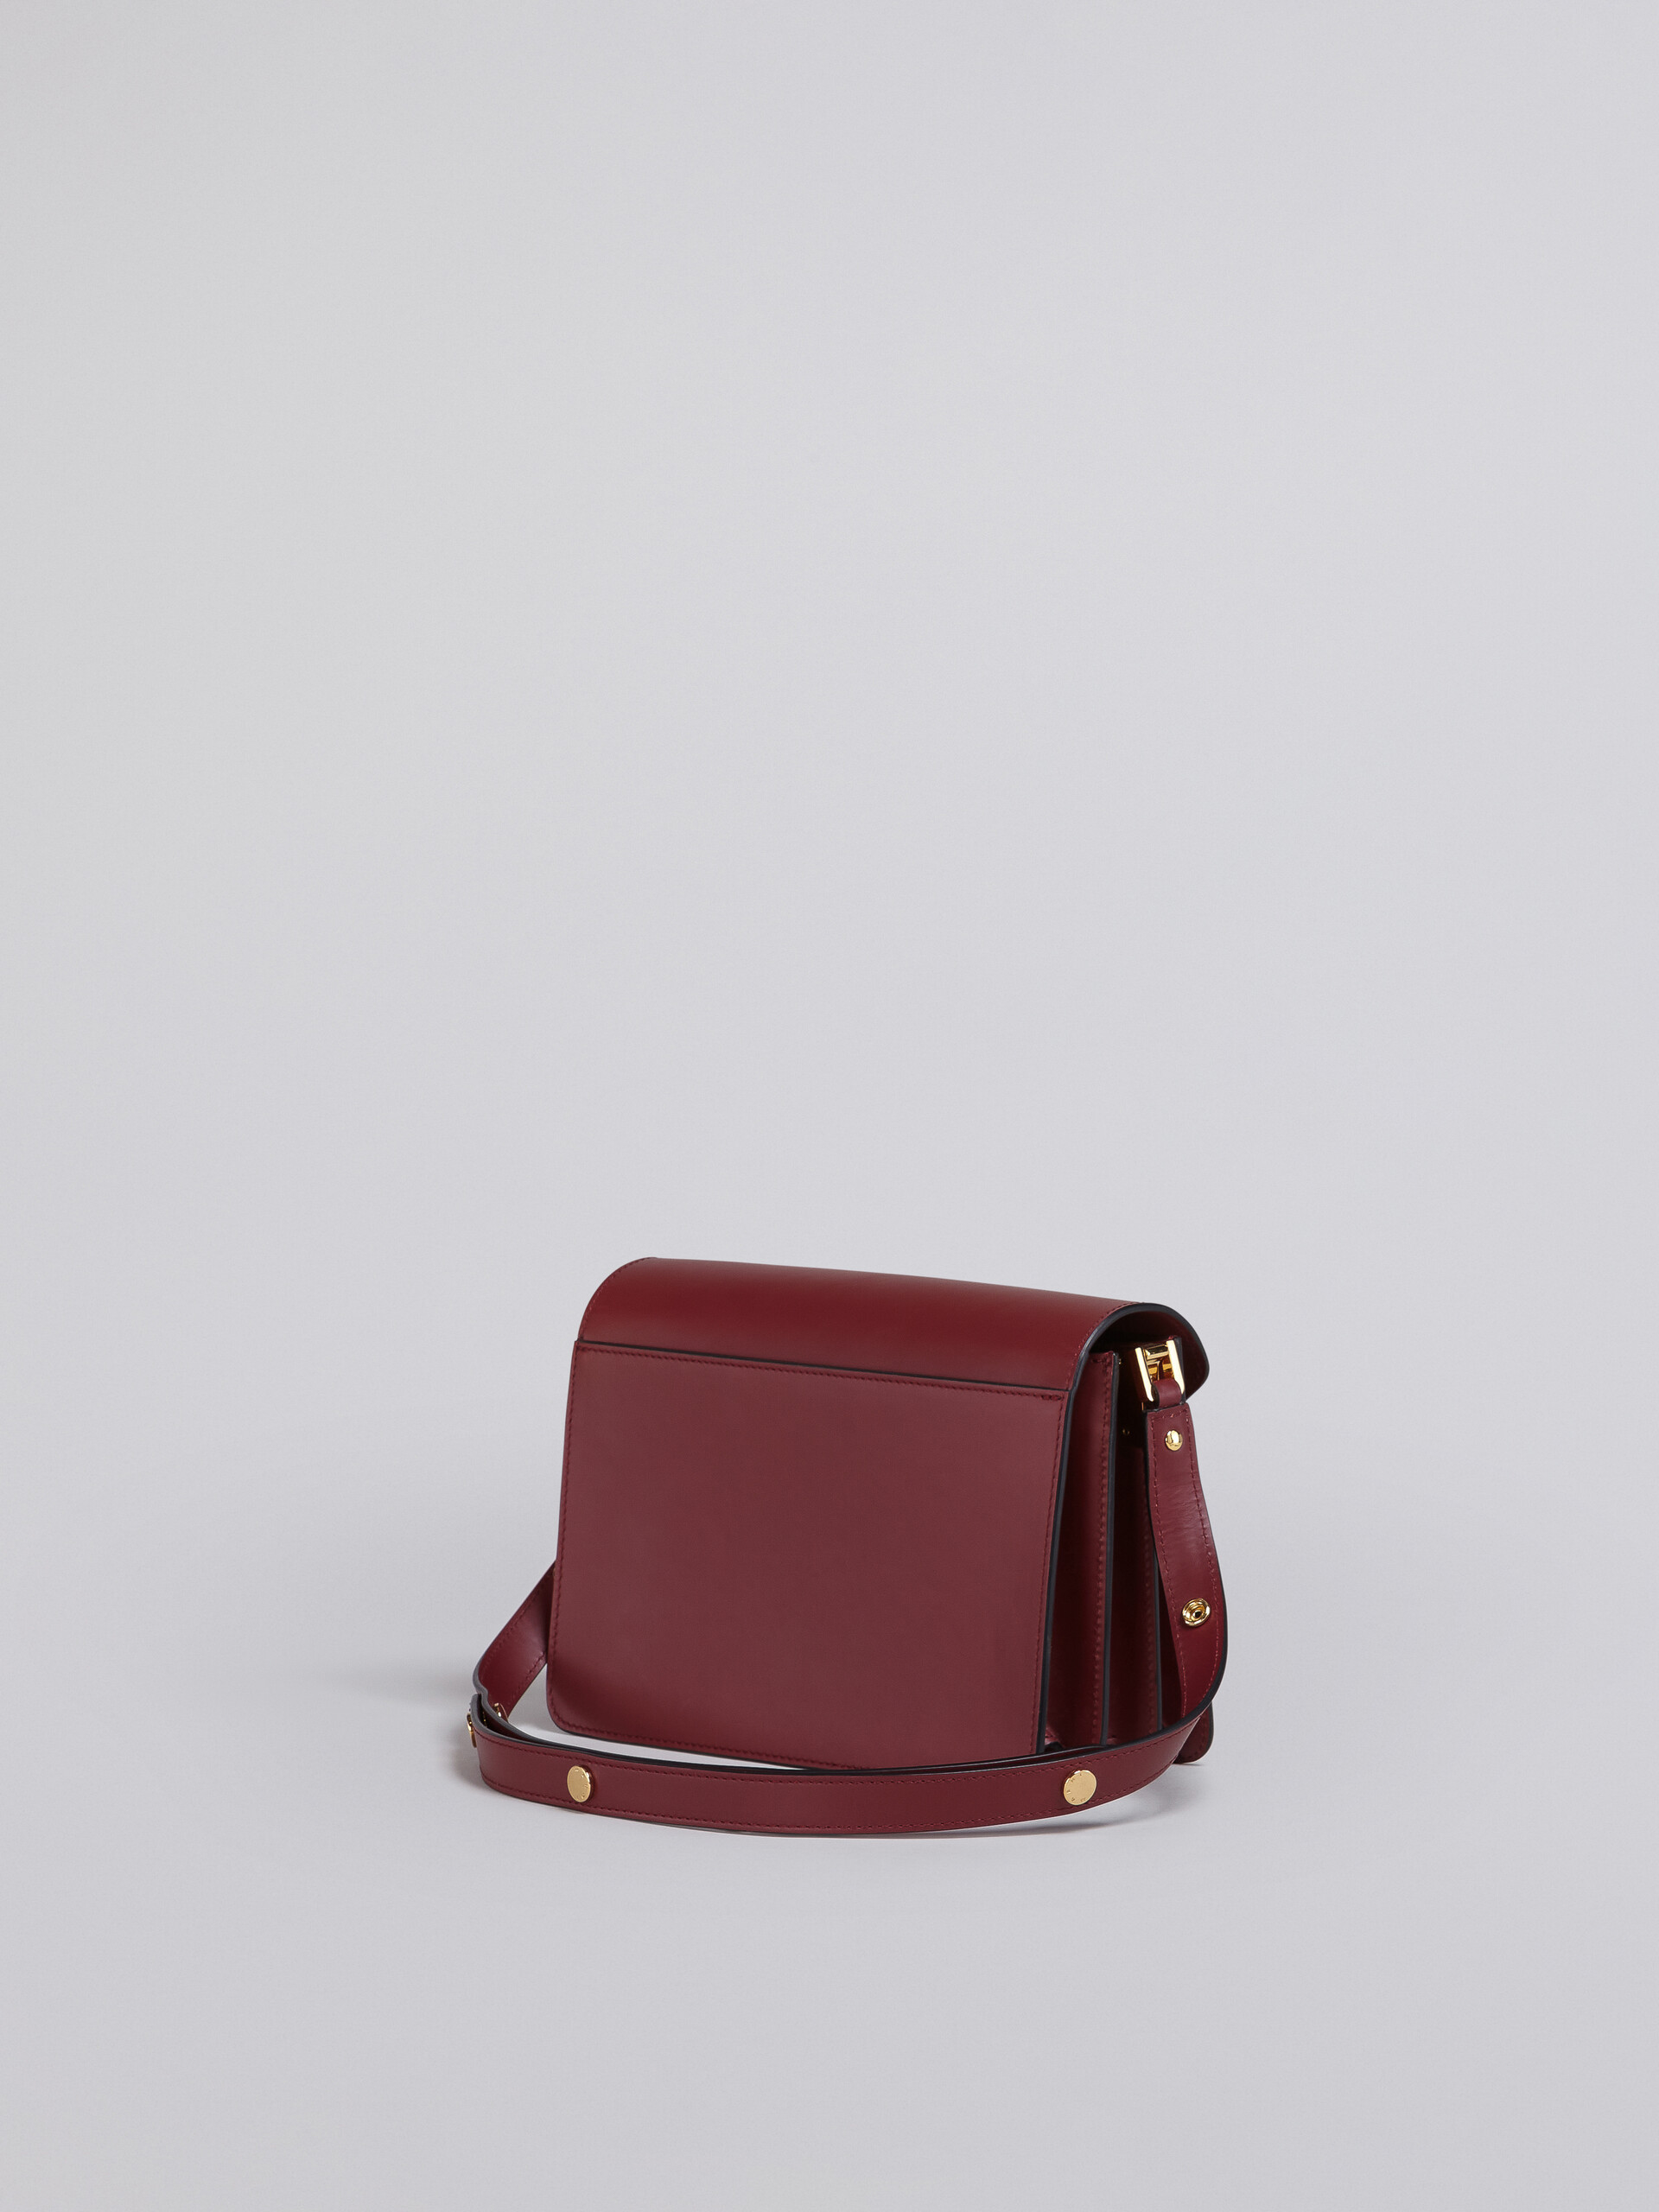 TRUNK medium bag in red leather - Shoulder Bag - Image 2